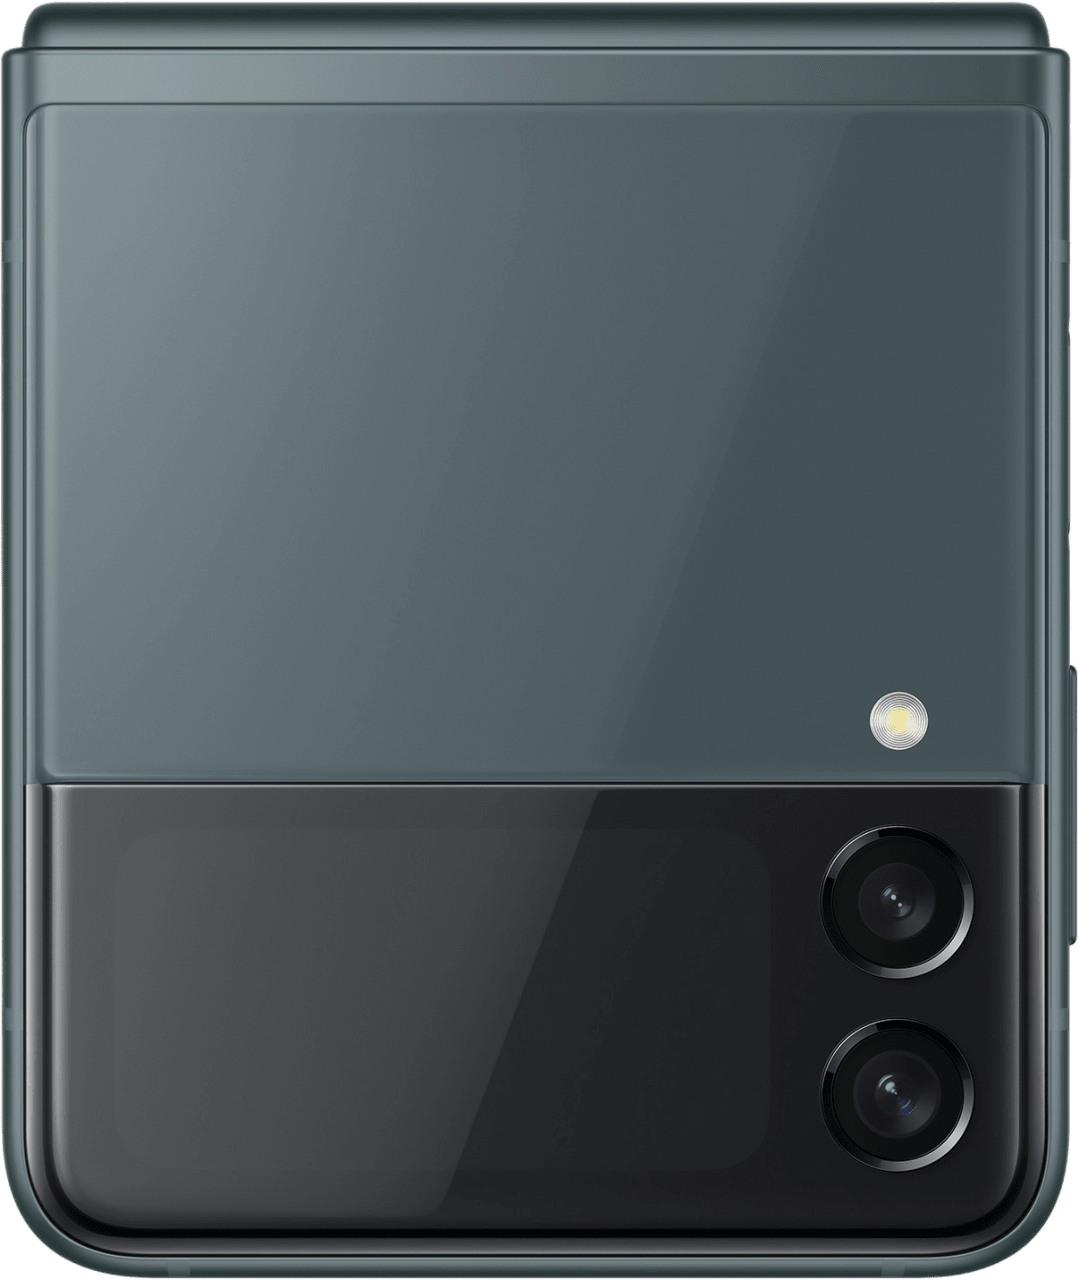 Groente Samsung Galaxy Z Flip 3 Smartphone - 128GB - Dual Sim.2